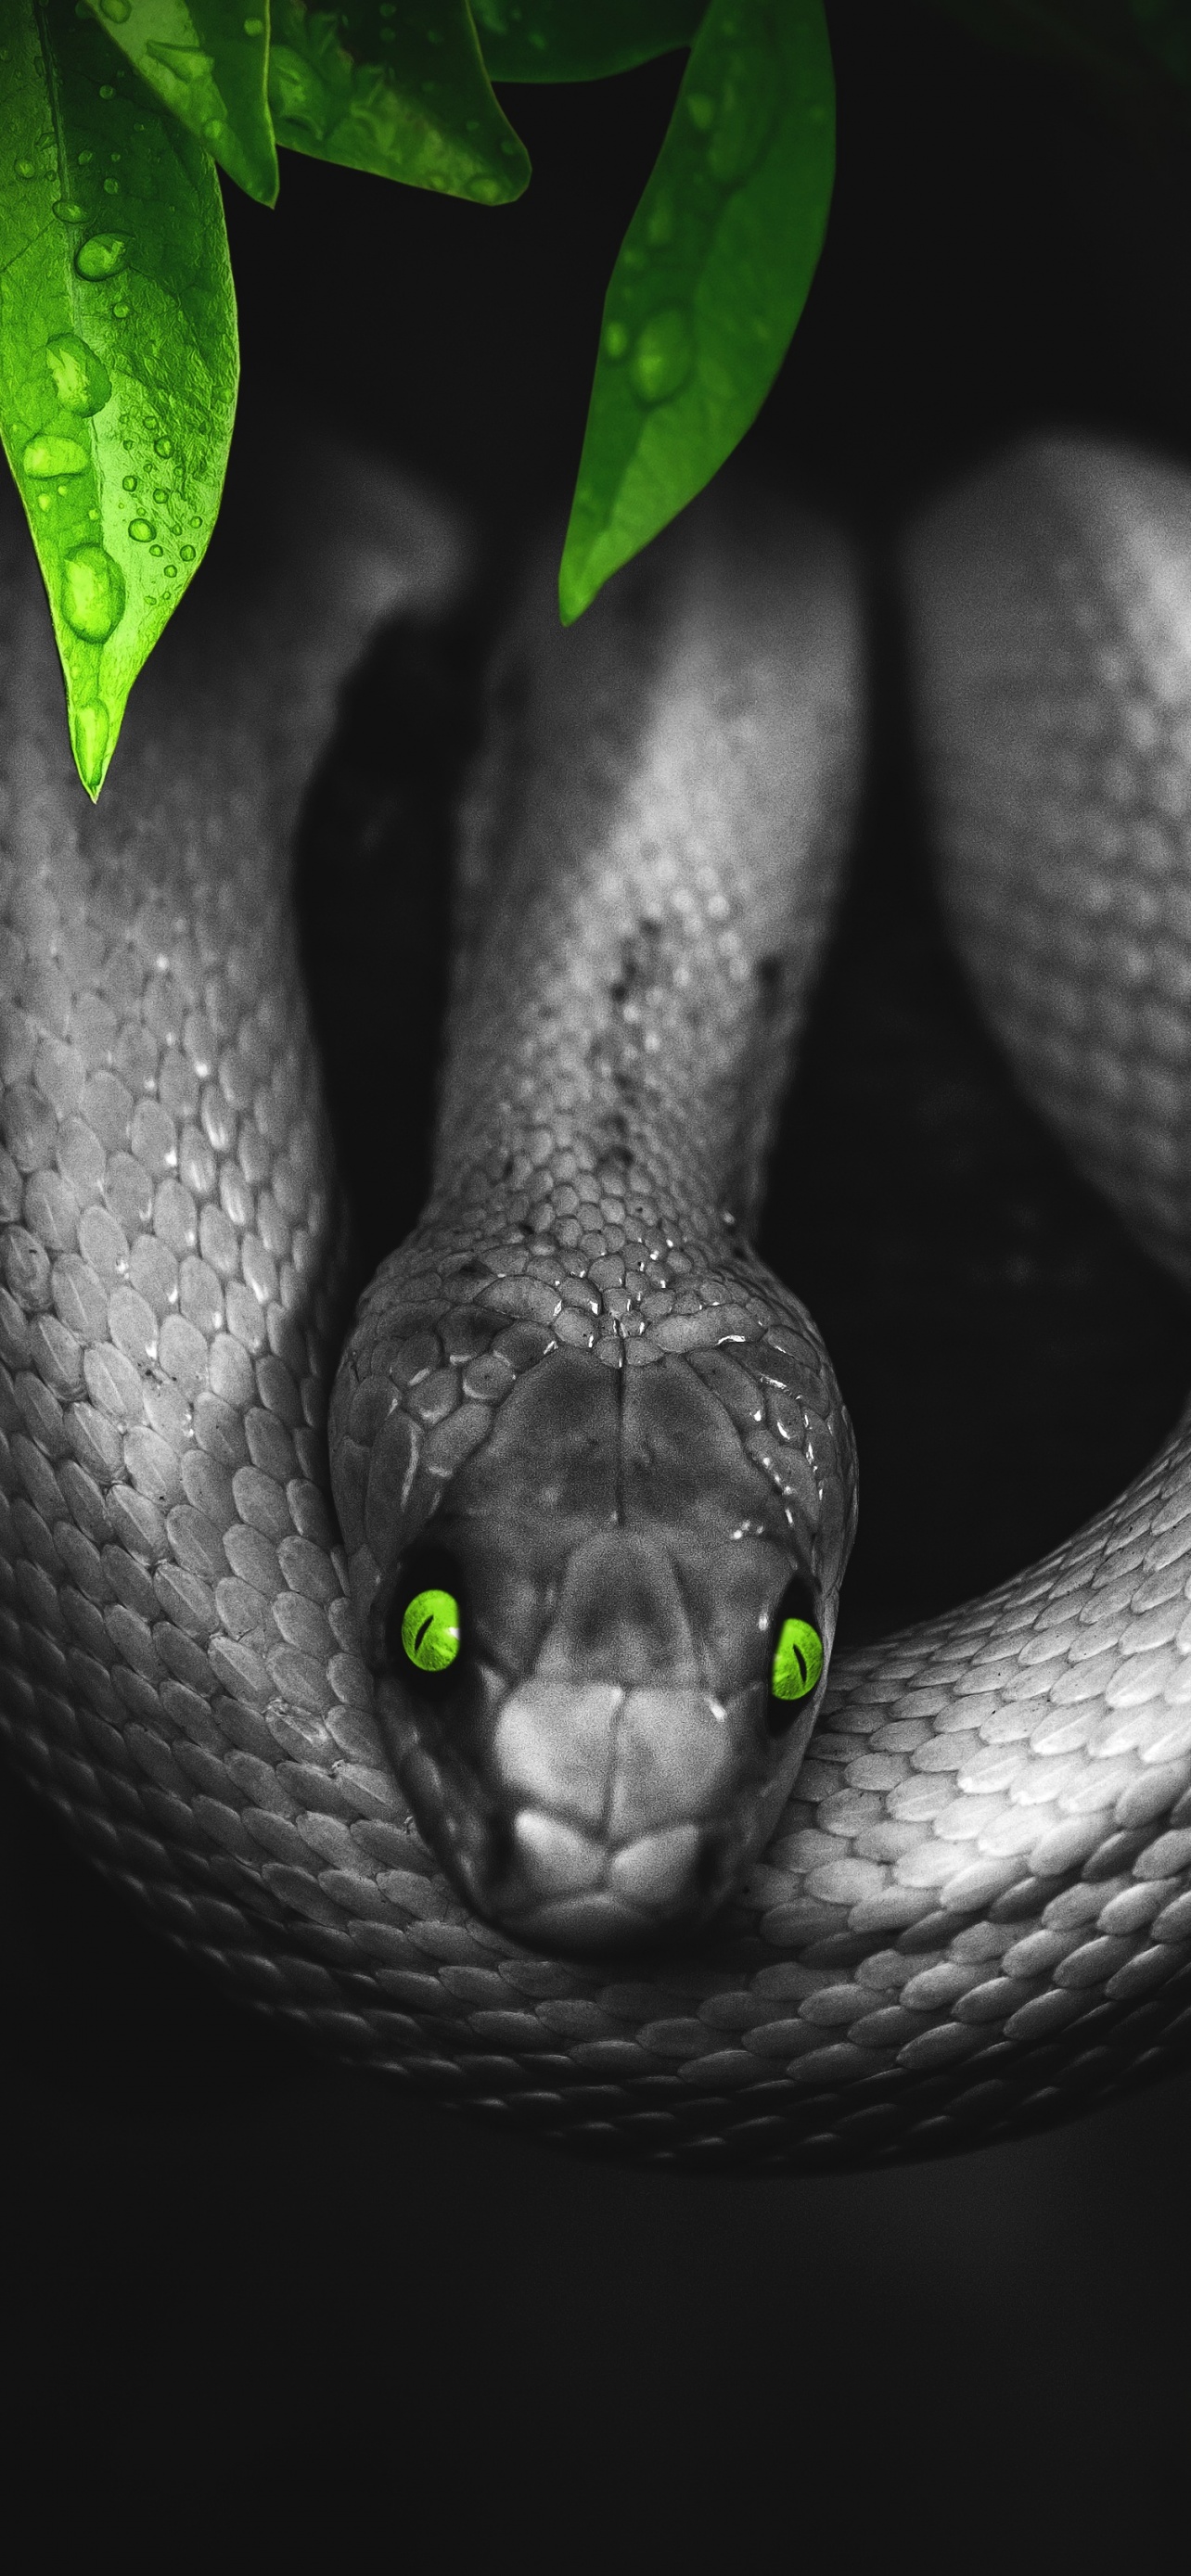 Bronze or Golden Snake among Black Snakes. 3D illustration Stock Photo -  Alamy